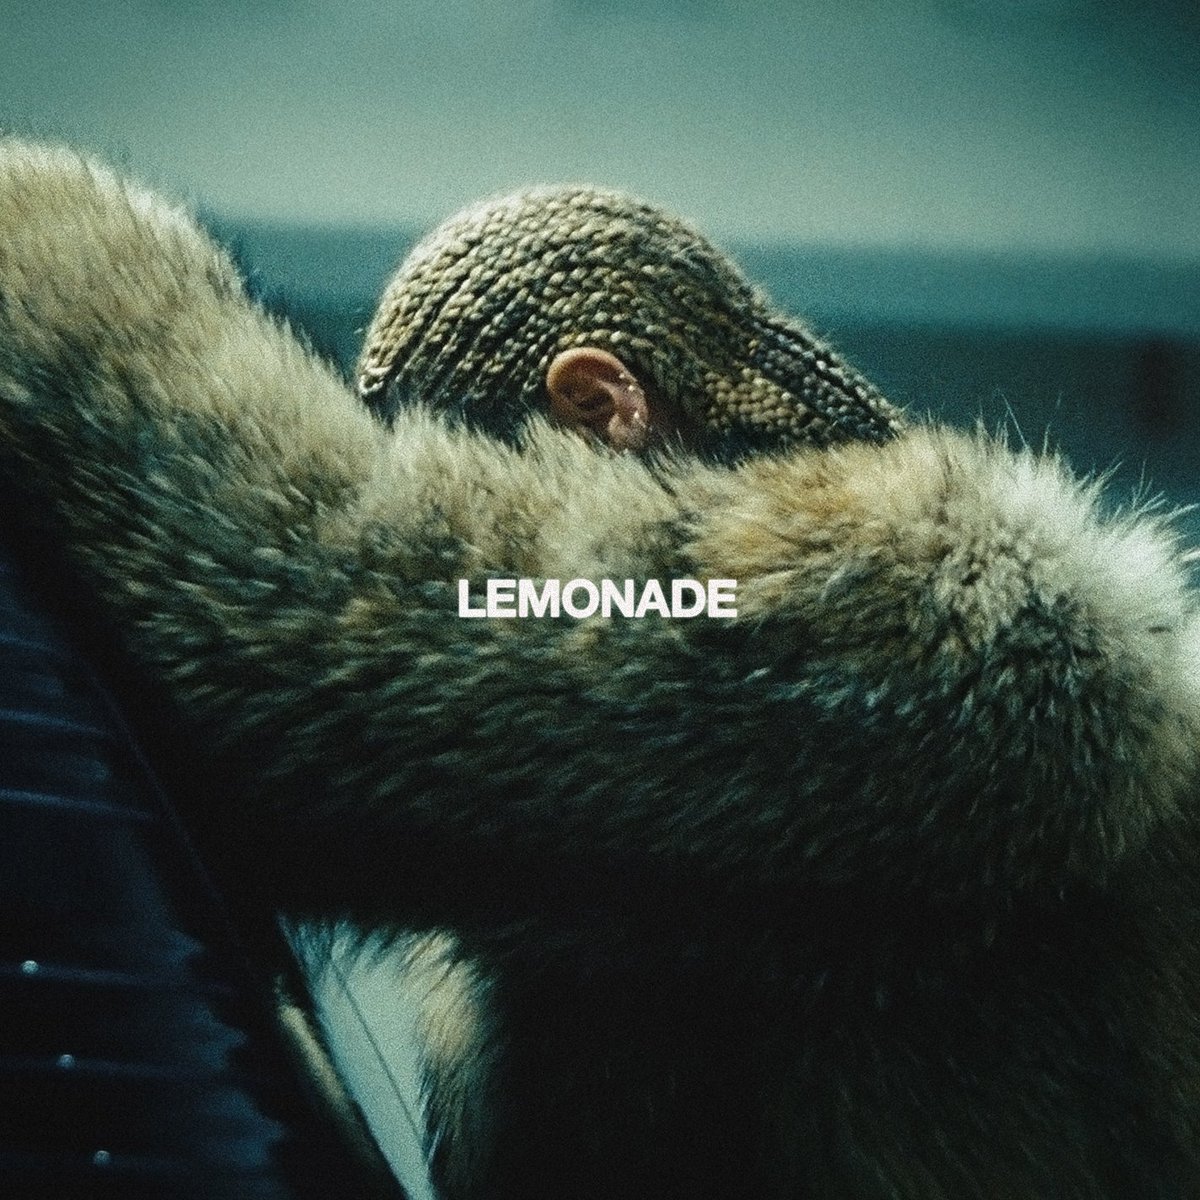 Há 8 anos, 'Lemonade', o 6° álbum de estúdio de Beyoncé era lançado. 

#8YearsOfLemonade